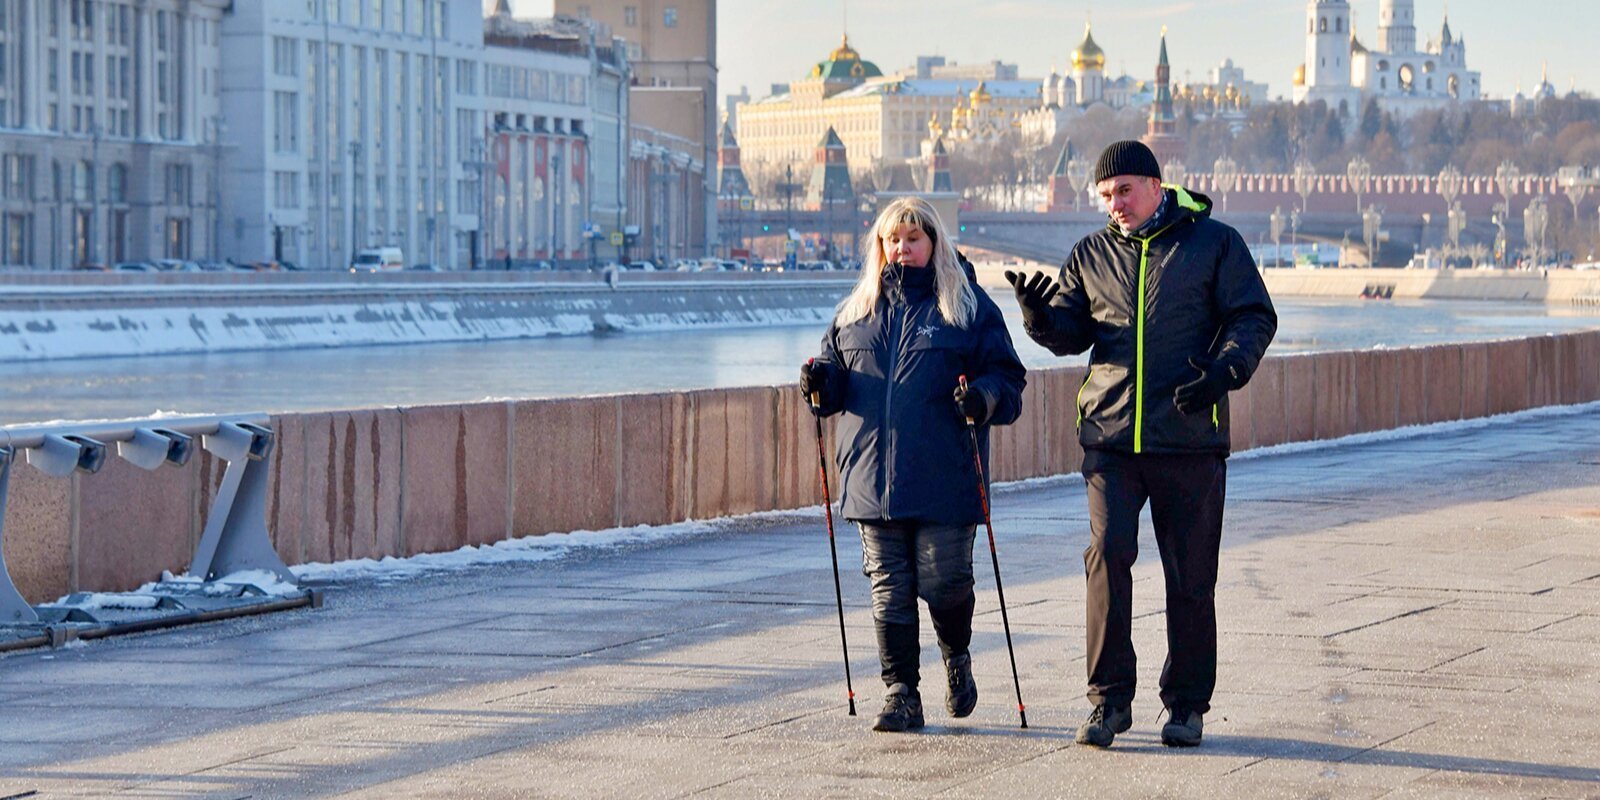 

С 8 марта пожилым москвичам разрешат выходить на улицу и разблокируют их транспортные карты

